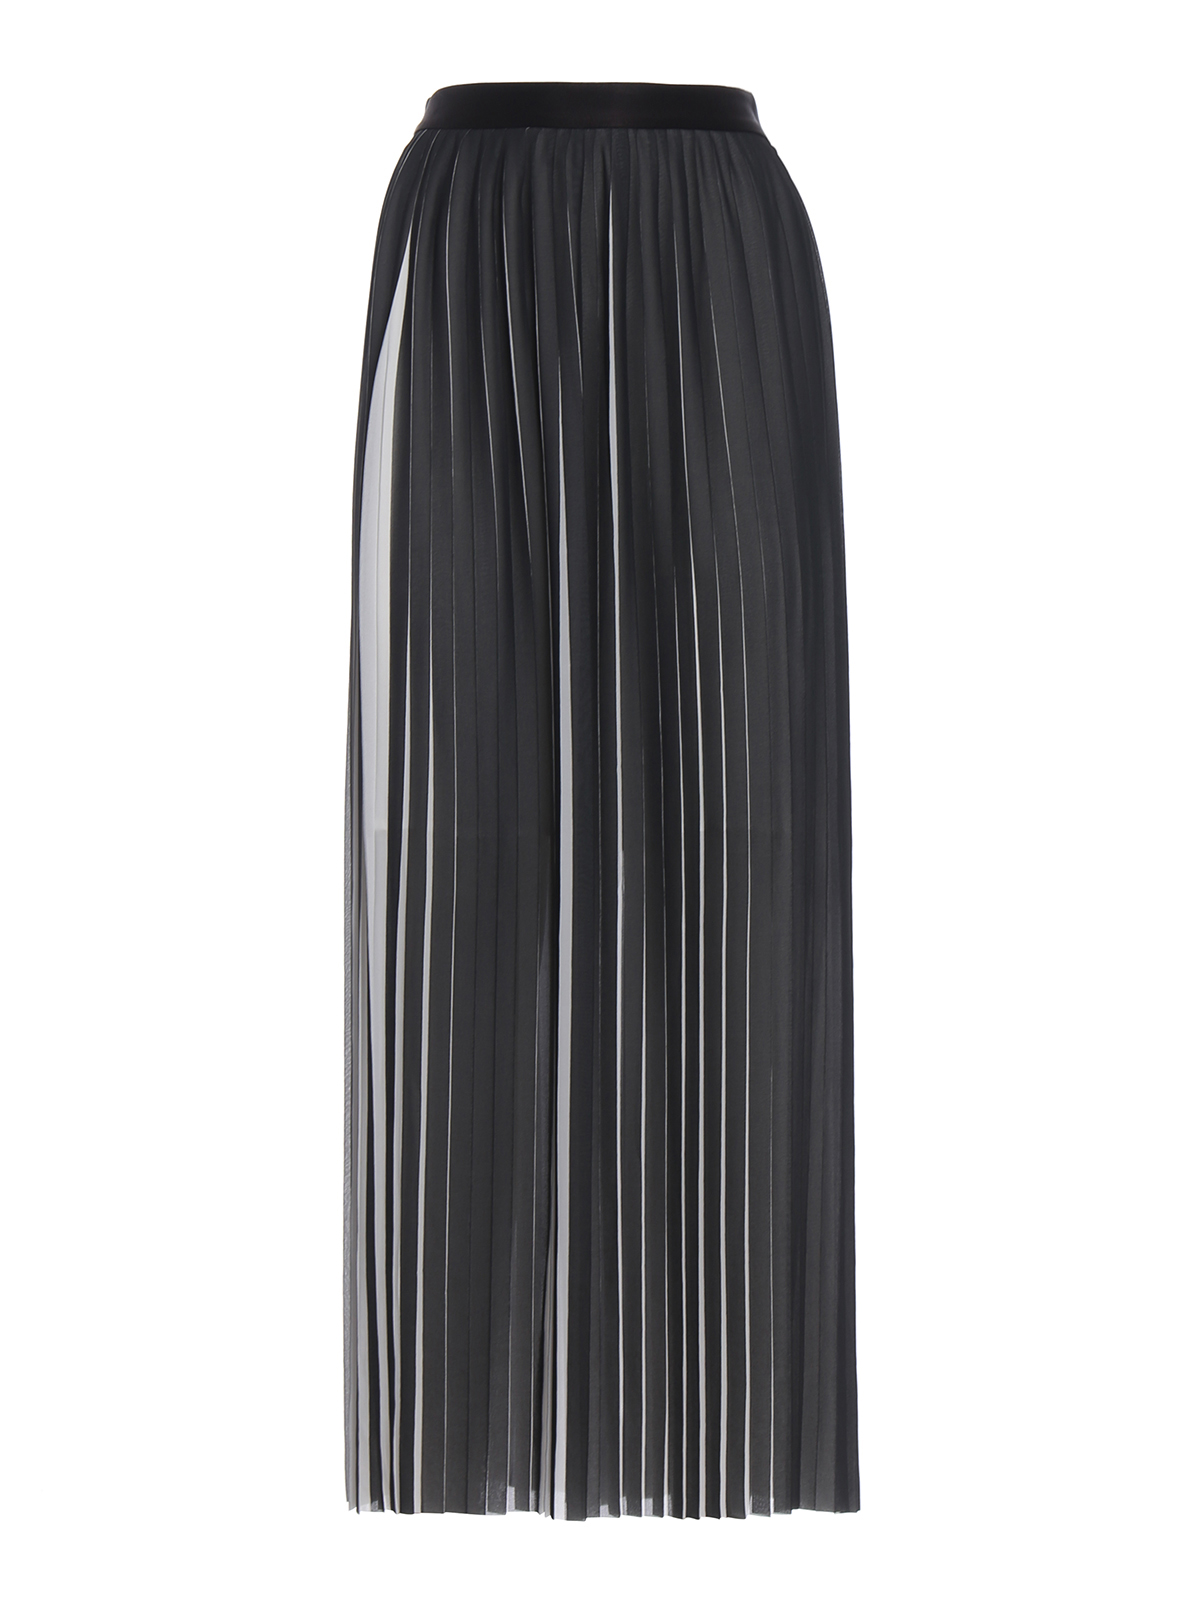 ロングシャツ Karl Lagerfeld - ロングスカート - 黒 - 81KW1200998